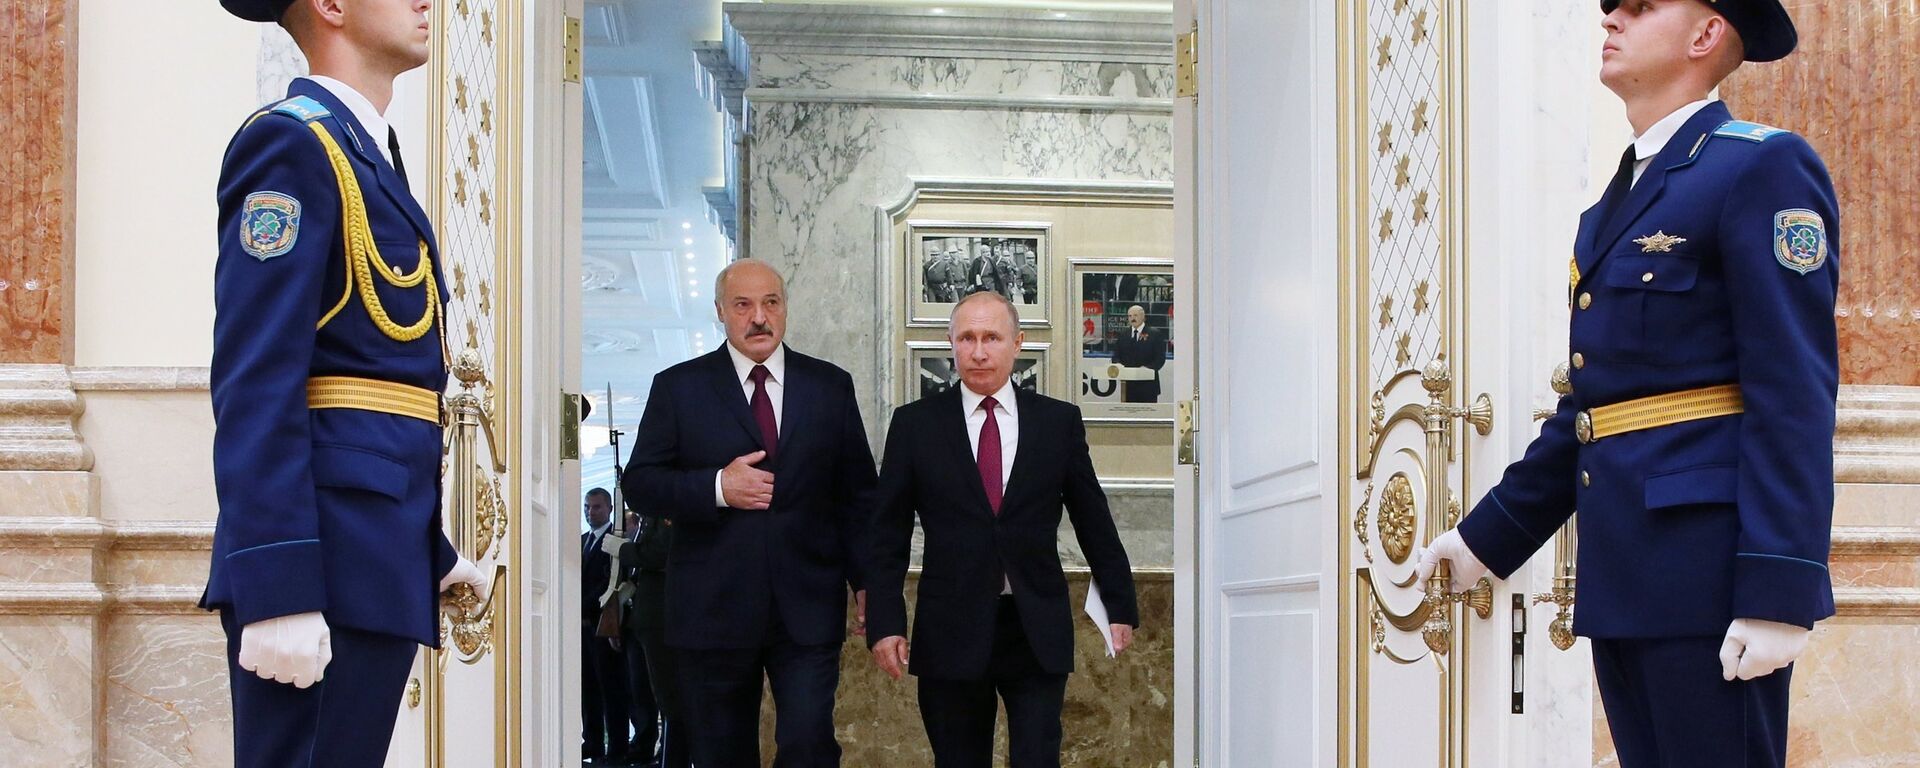 Владимир Путин и Александр Лукашенко на заседании ВГС в Минске - Sputnik Беларусь, 1920, 03.11.2021